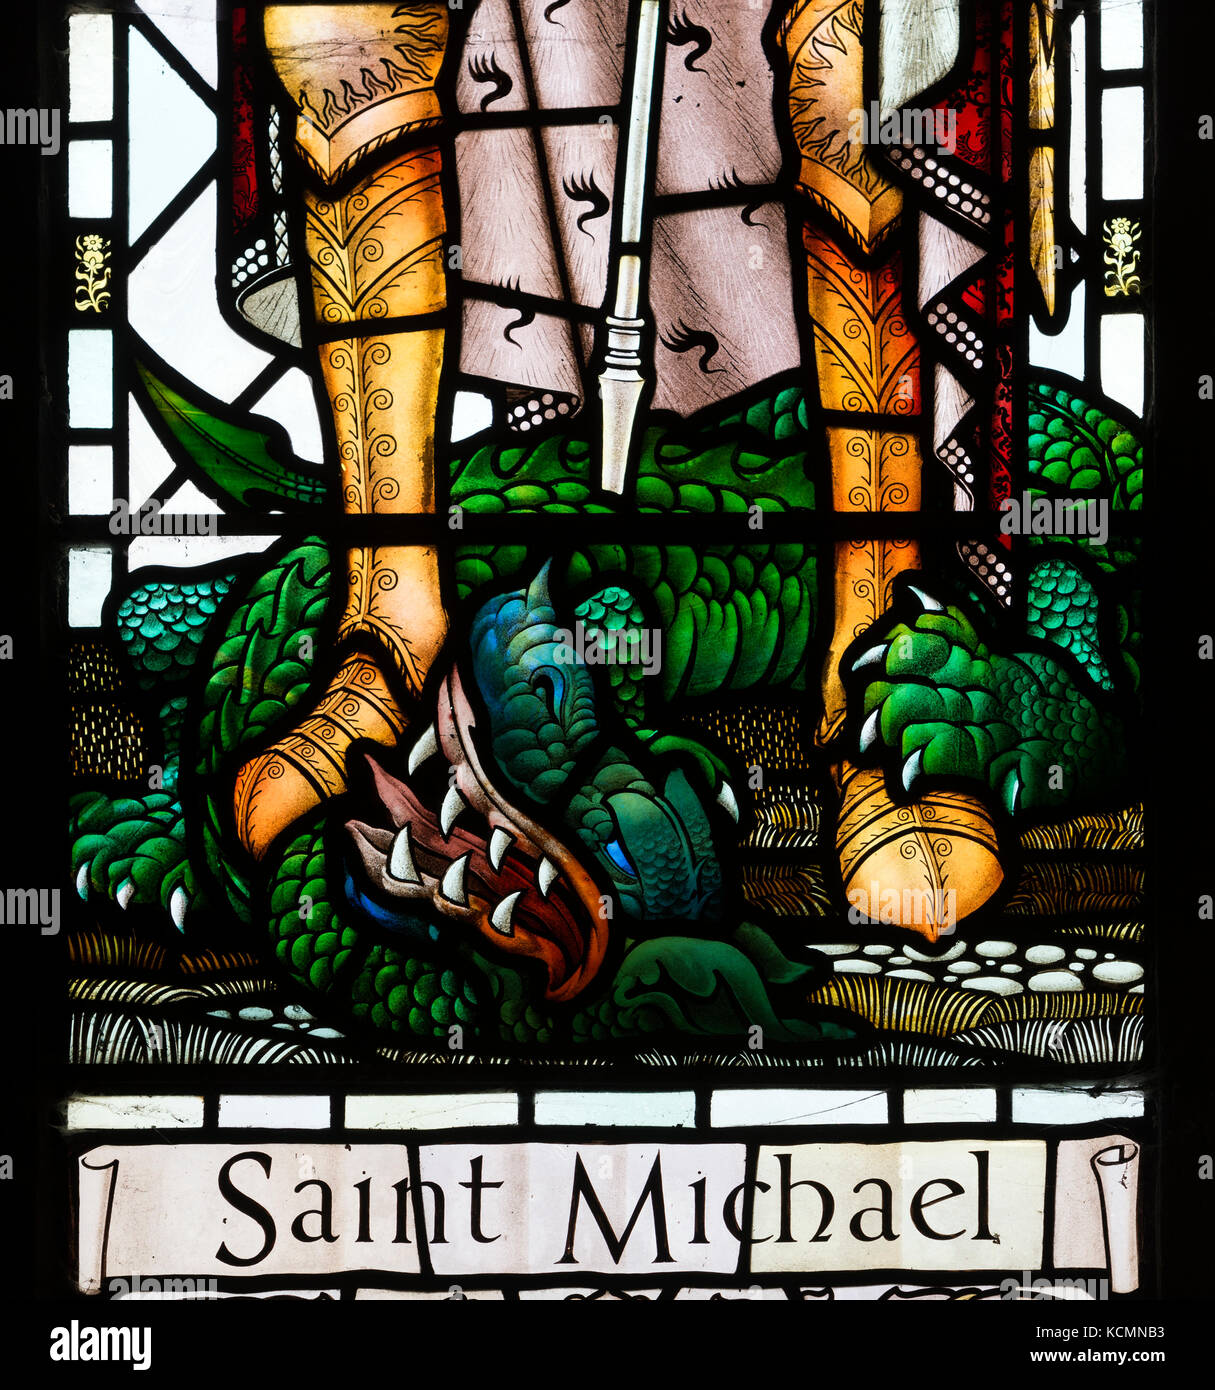 Détail du vitrail de Saint Michel, St Wilfrid's Church, Milton Keynes - Old Stratford, Lancashire, England, UK Banque D'Images